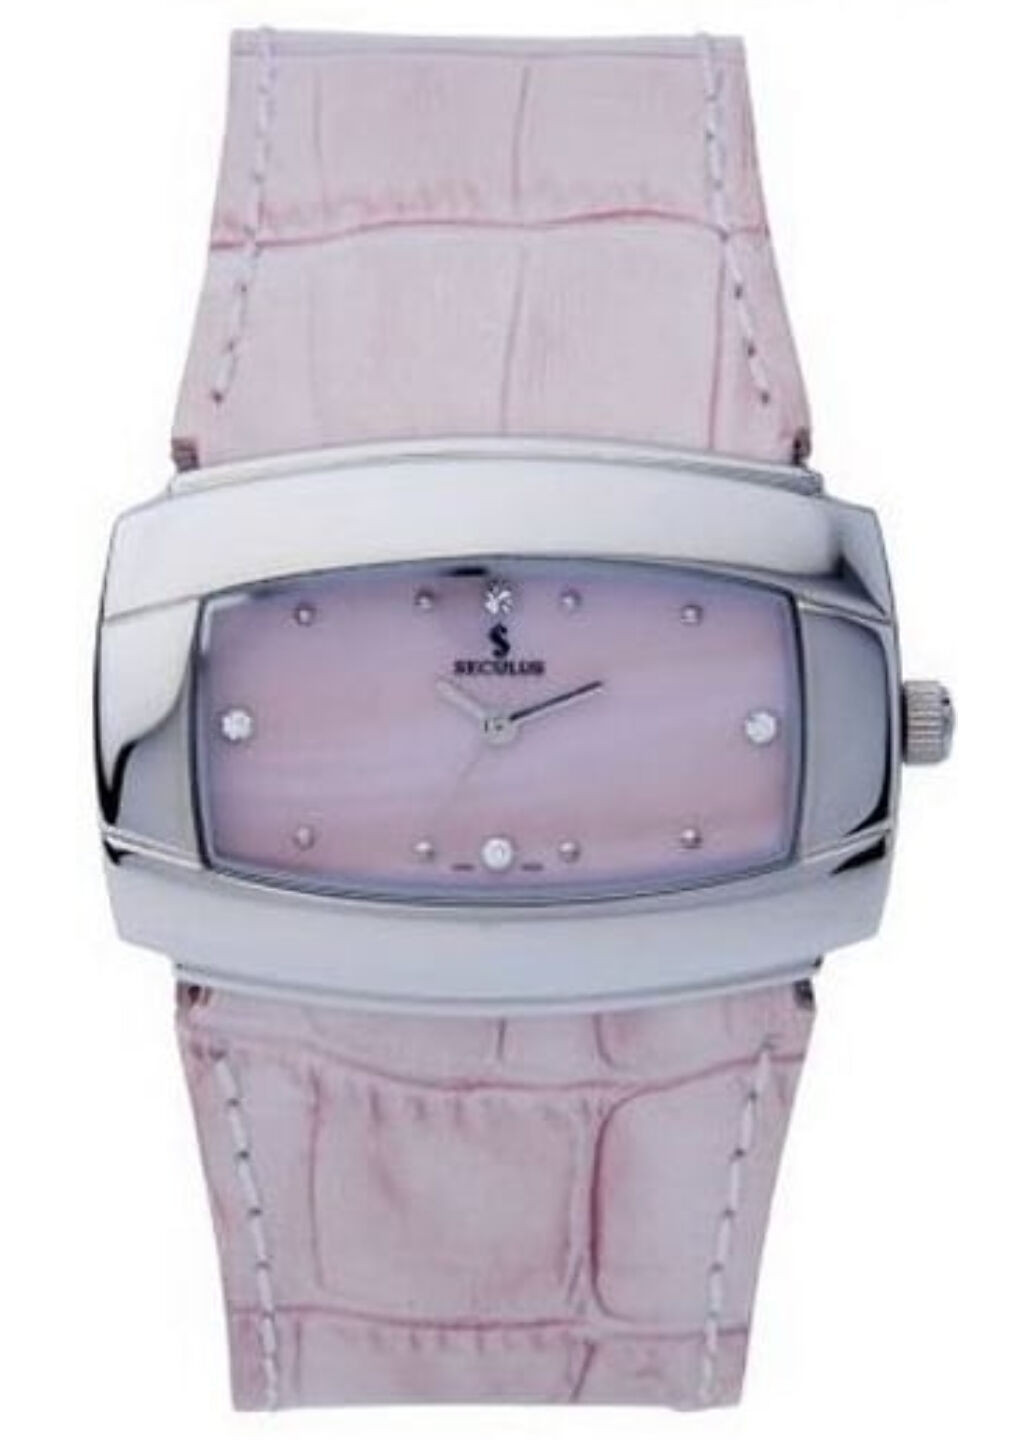 Часы наручные Seculus 1594.1.763 mop.ss.pink leather (250303714)